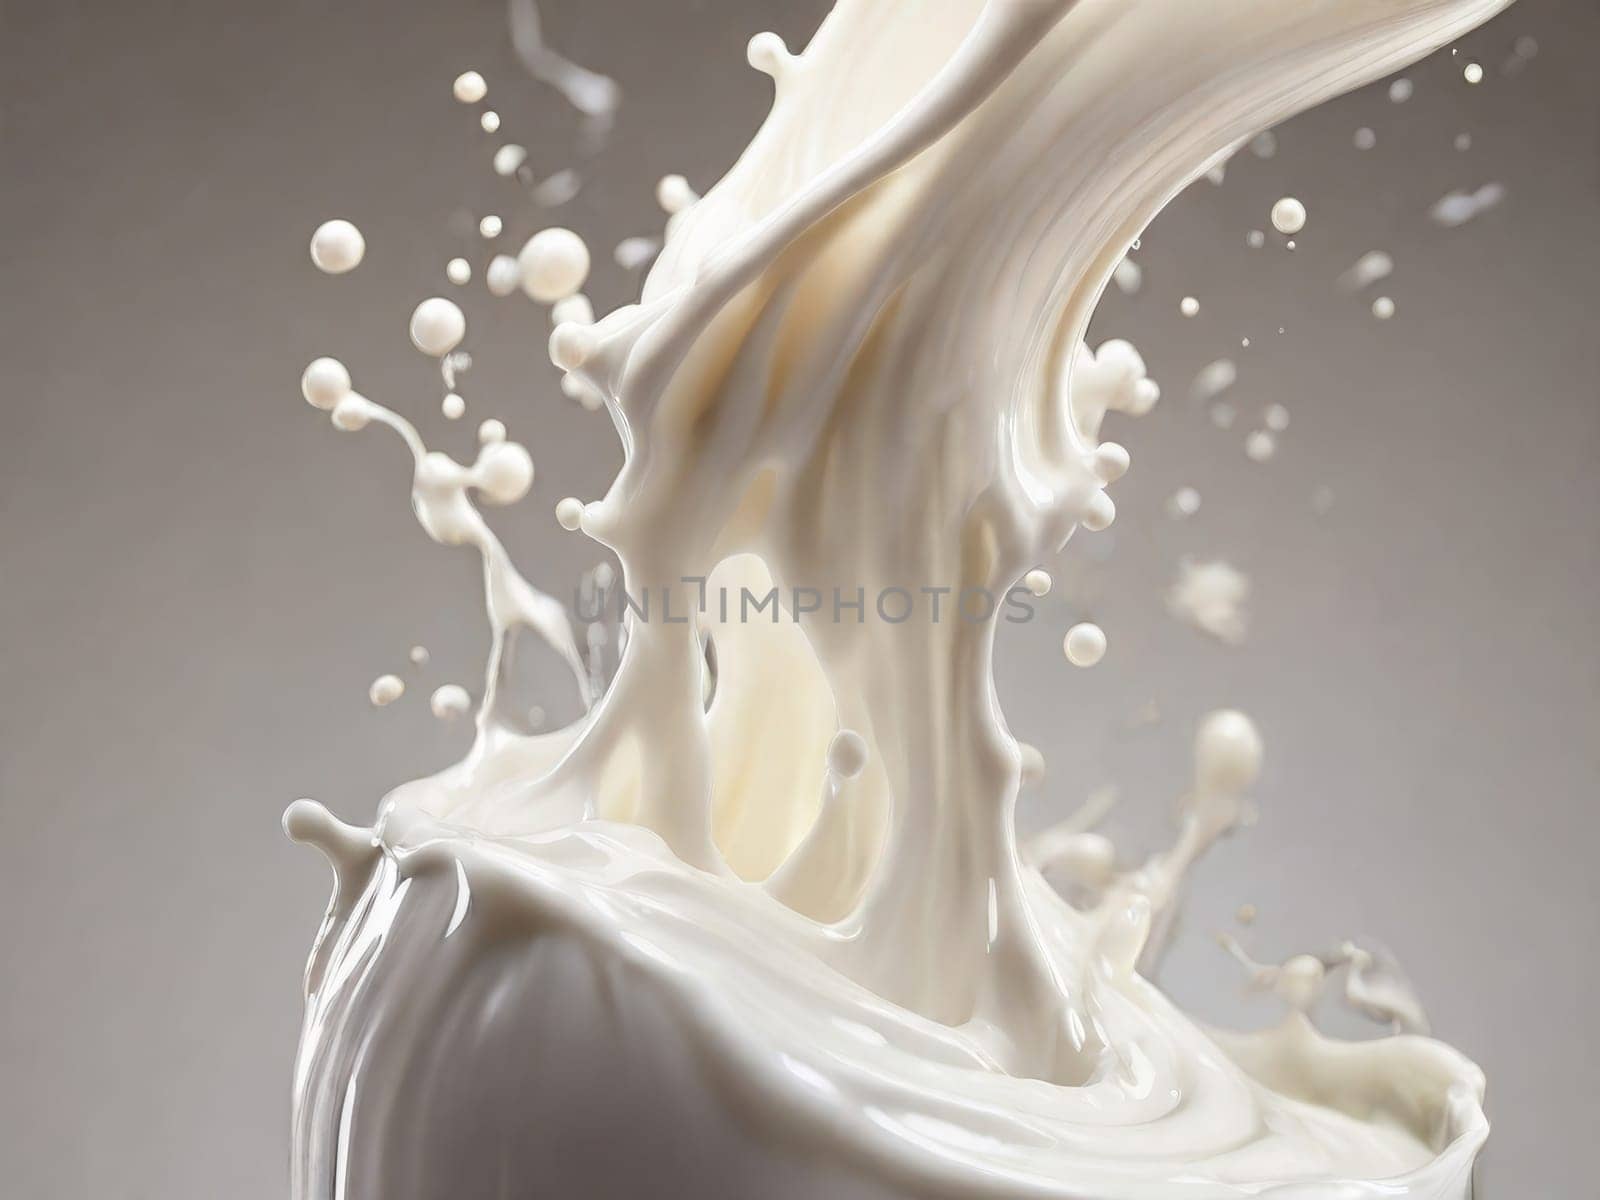 splashing milk on white background by Ekaterina34